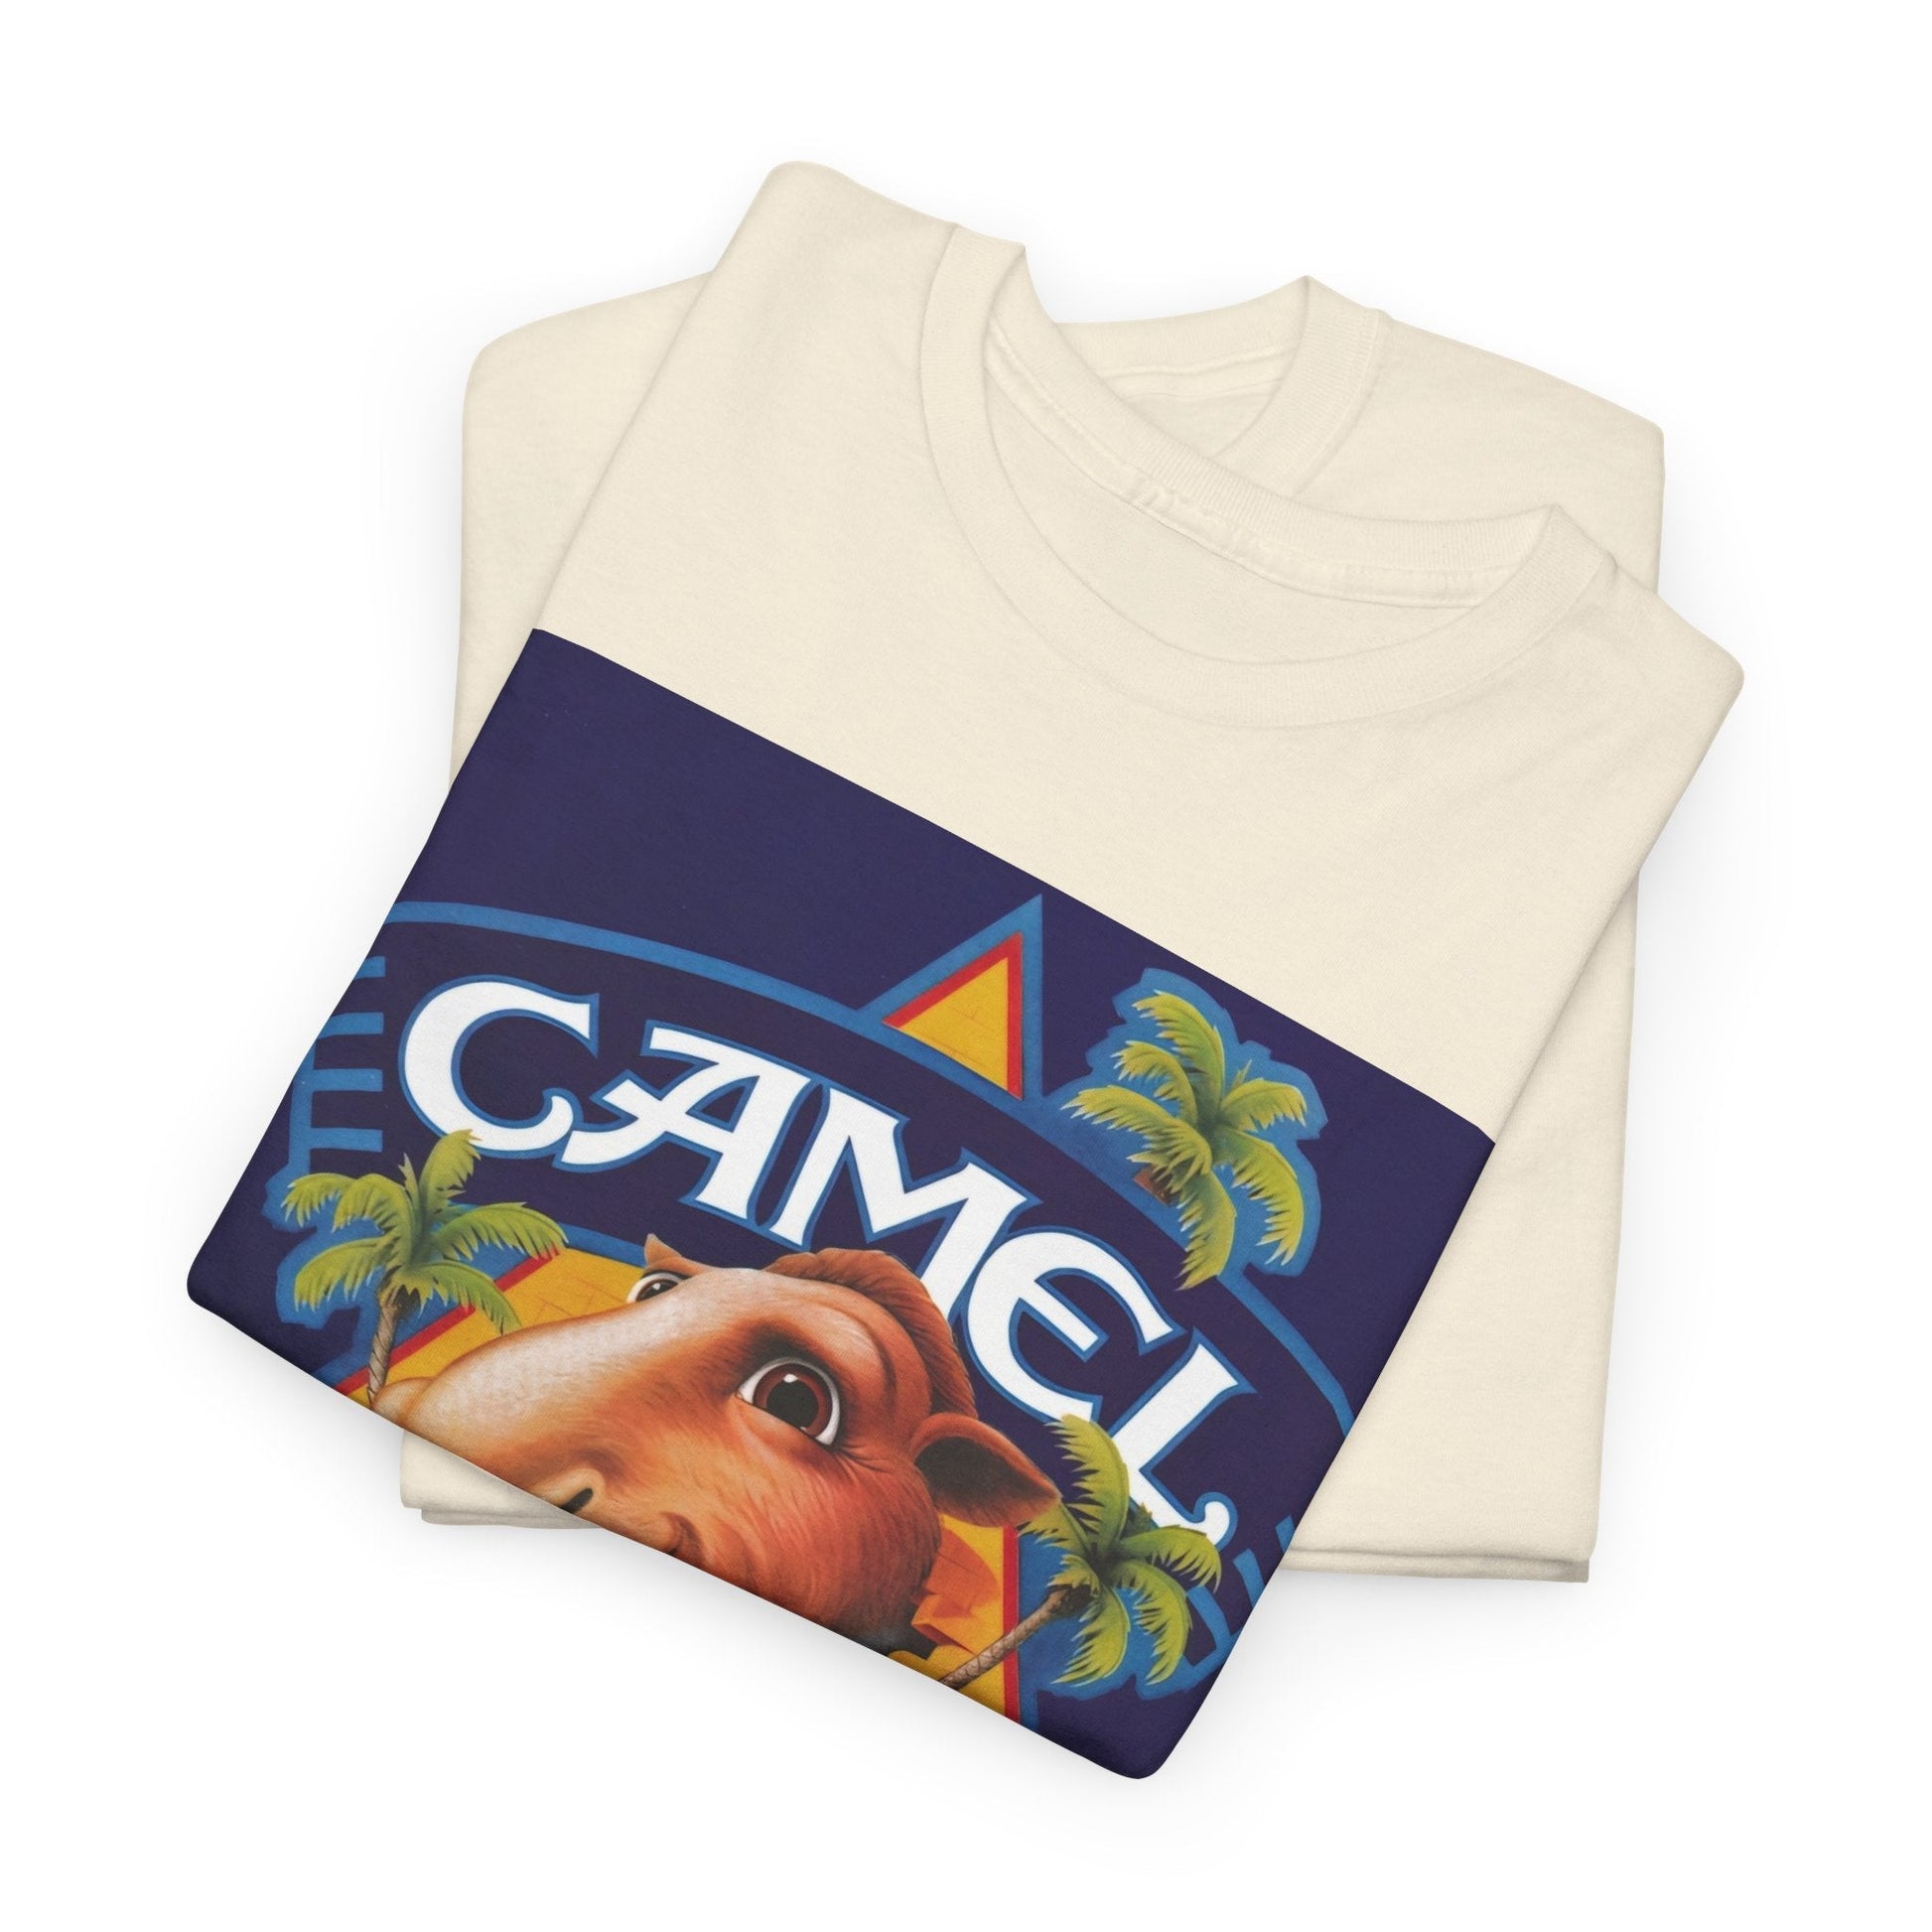 Vintage 1988 Joe Camel Cigarette 75th Birthday T-Shirt - RetroTeeShop